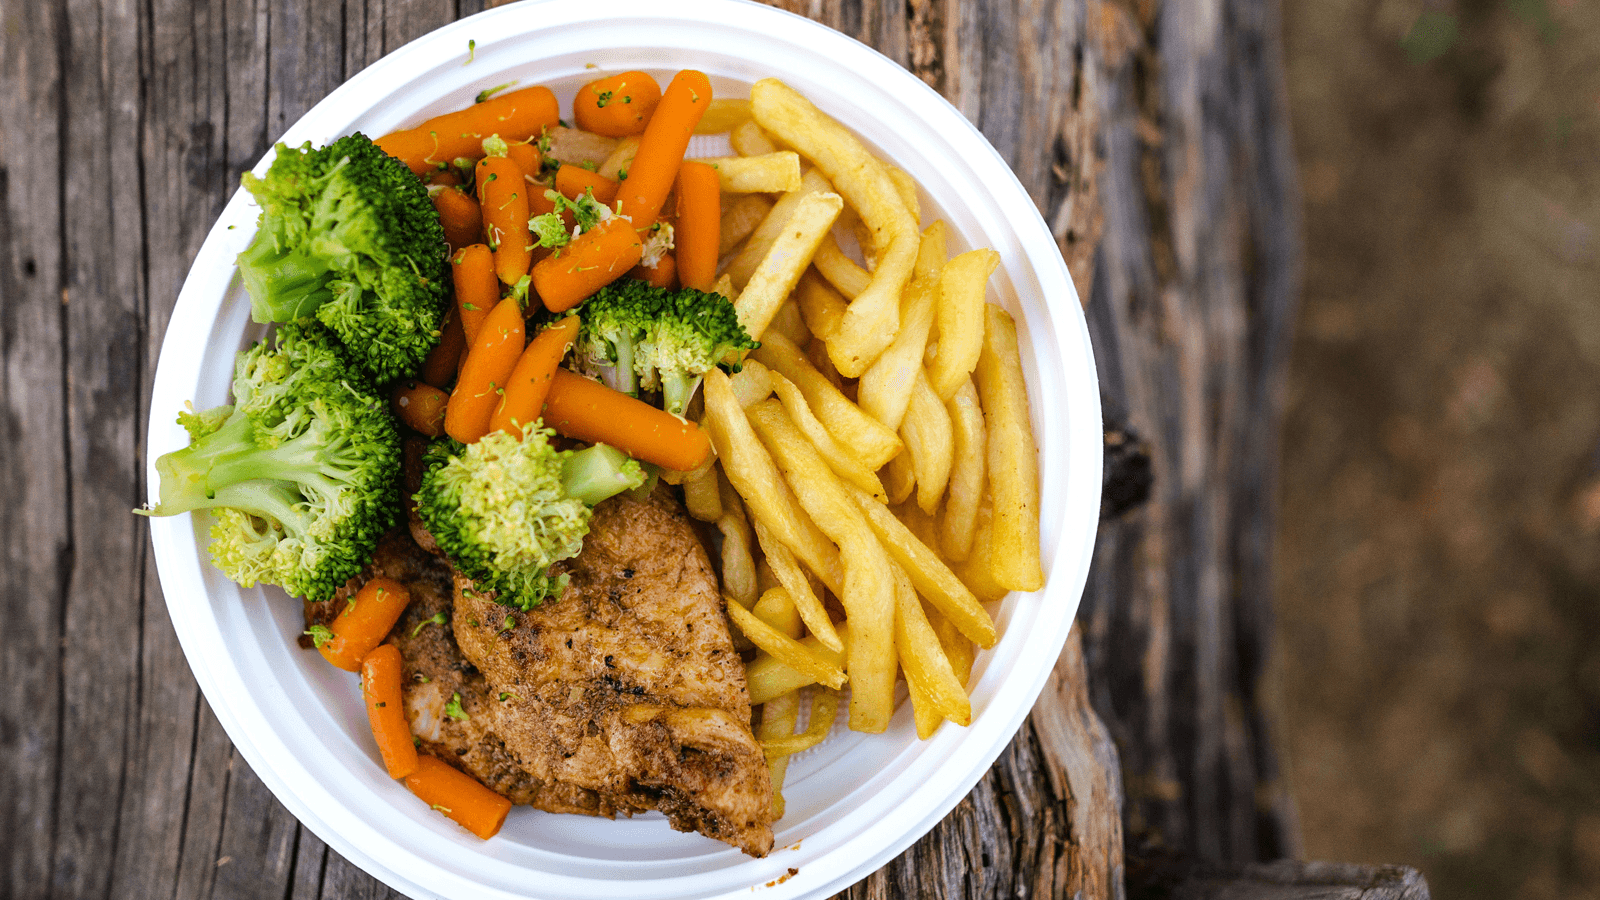 Nghiên cứu mới nhất cho thấy, chế độ ăn low carb có thể làm giảm tới 4 năm tuổi thọ. Tuy nhiên, đó chỉ là khi bạn chọn sai nguồn thực phẩm.